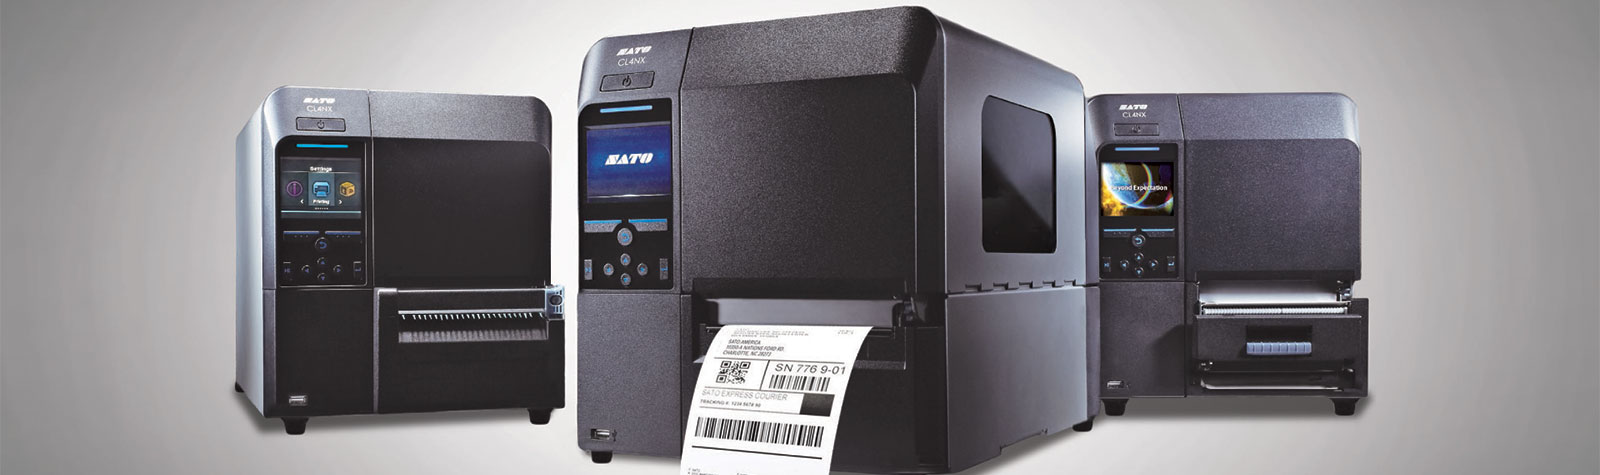 Sato Barcode Printers